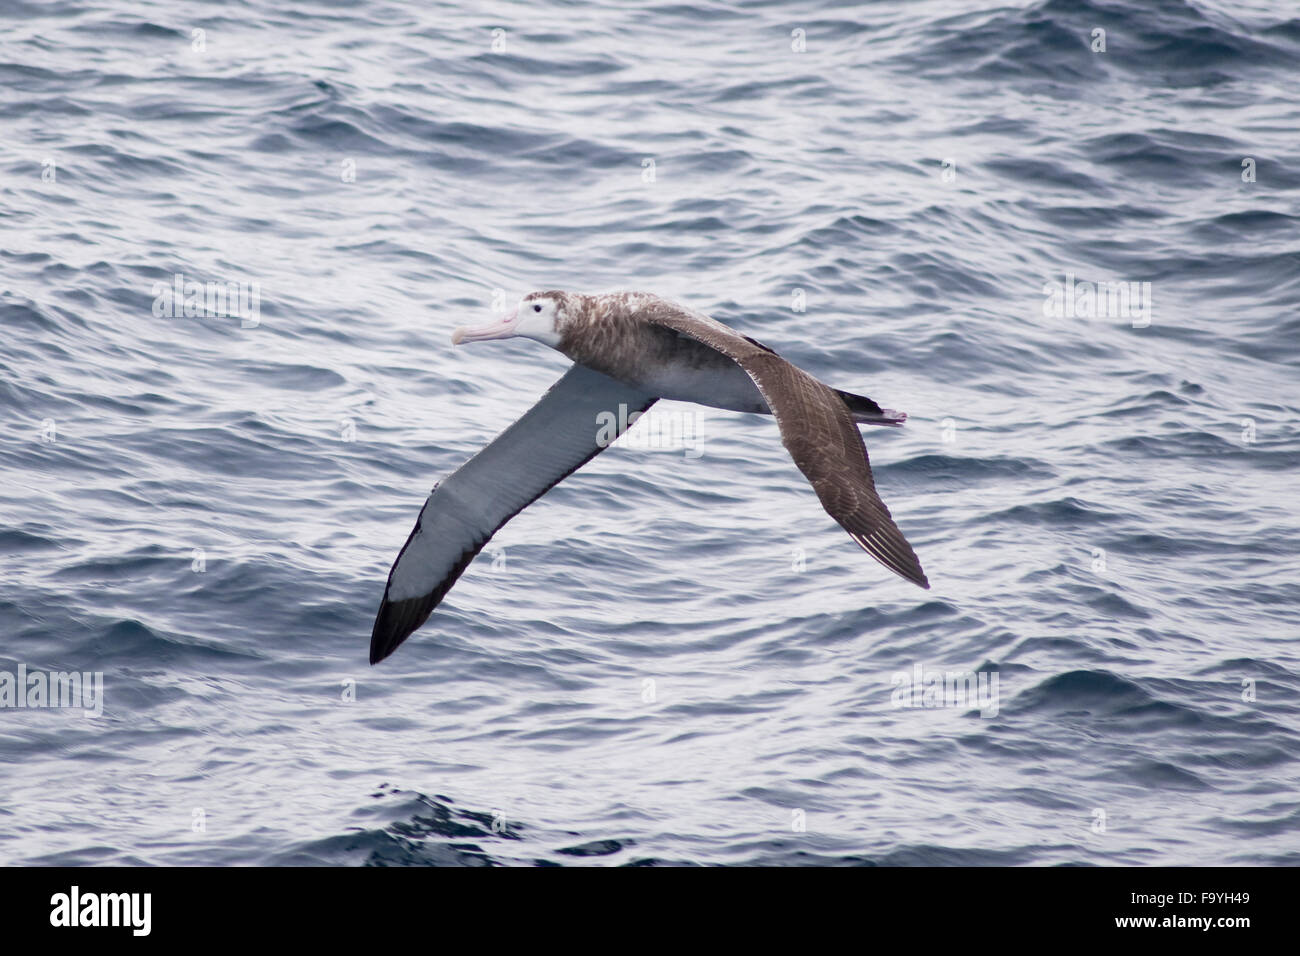 Tristan albatross (Diomedea dabbenena), flying near Tristan Da Cunha, South Atlantic Ocean Stock Photo